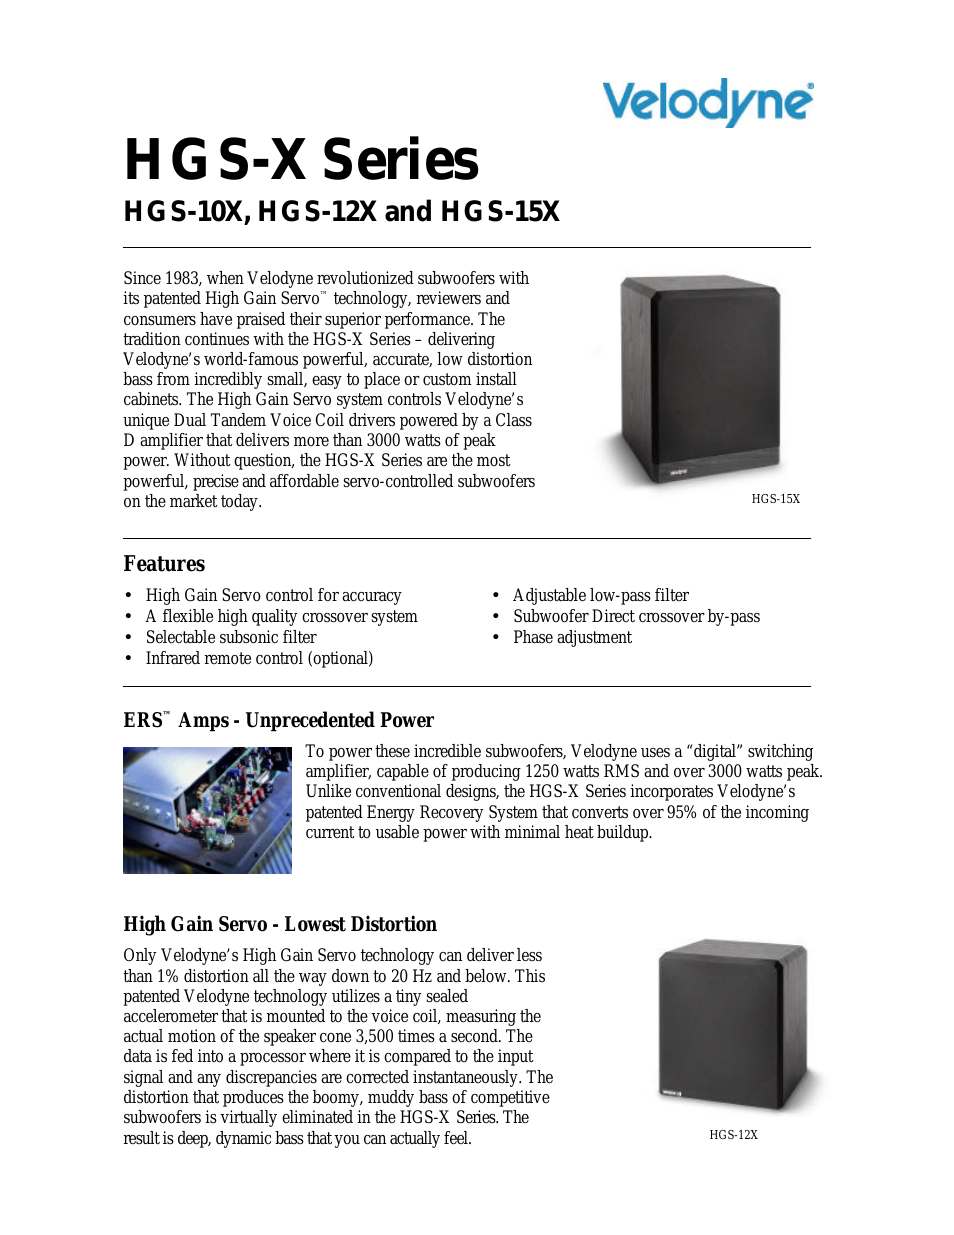 HGS-X SERIES HGS-10X